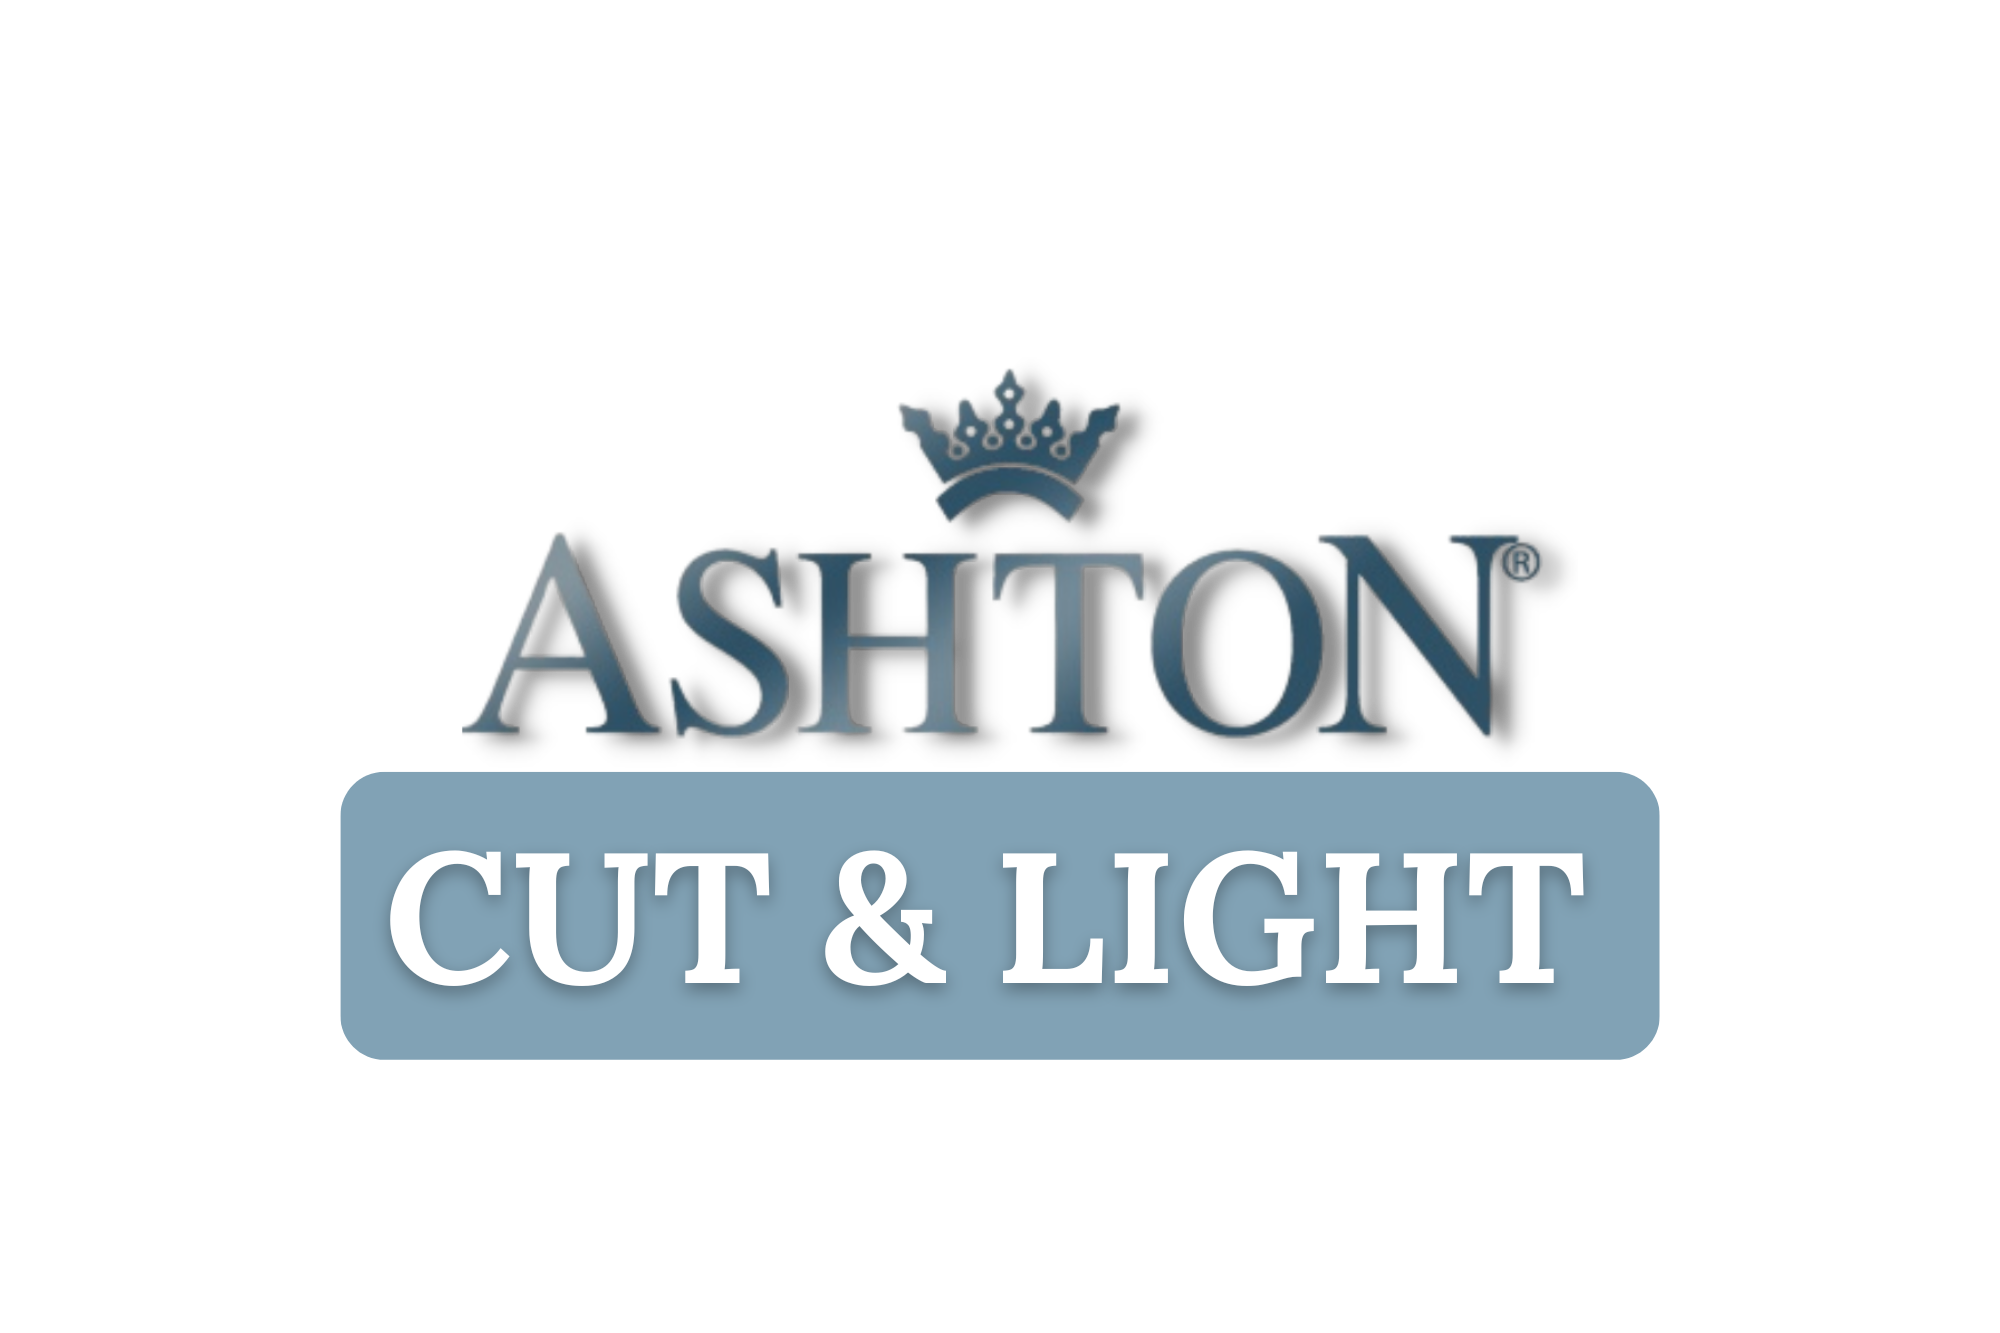 Ashton. Ashton Event. Ashton Cut & Light. La Aroma de Cuba. San Cristobal. LADC. Cigars. Event. Gift with Purchase.